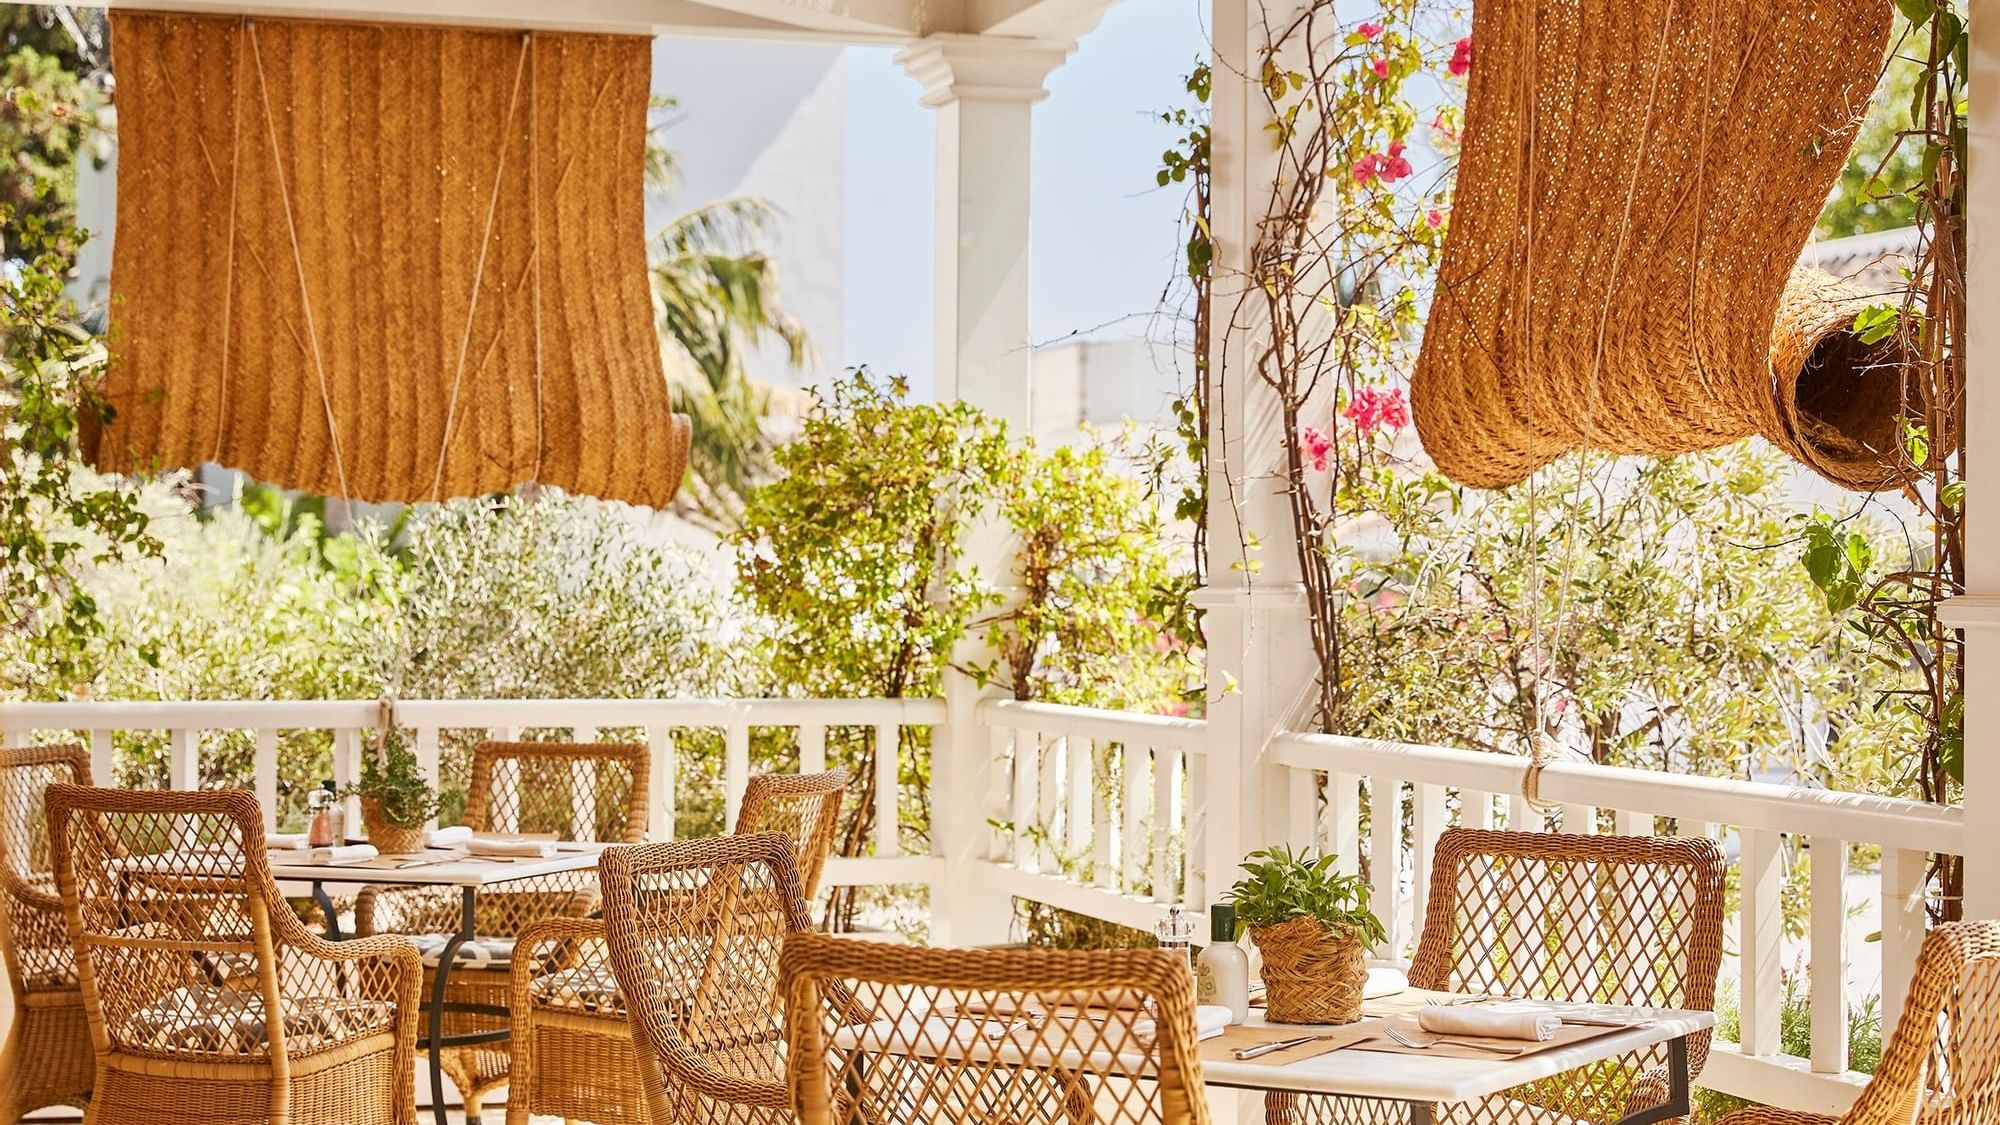 Terrace dining area in El Olivar restaurant at Marbella Club